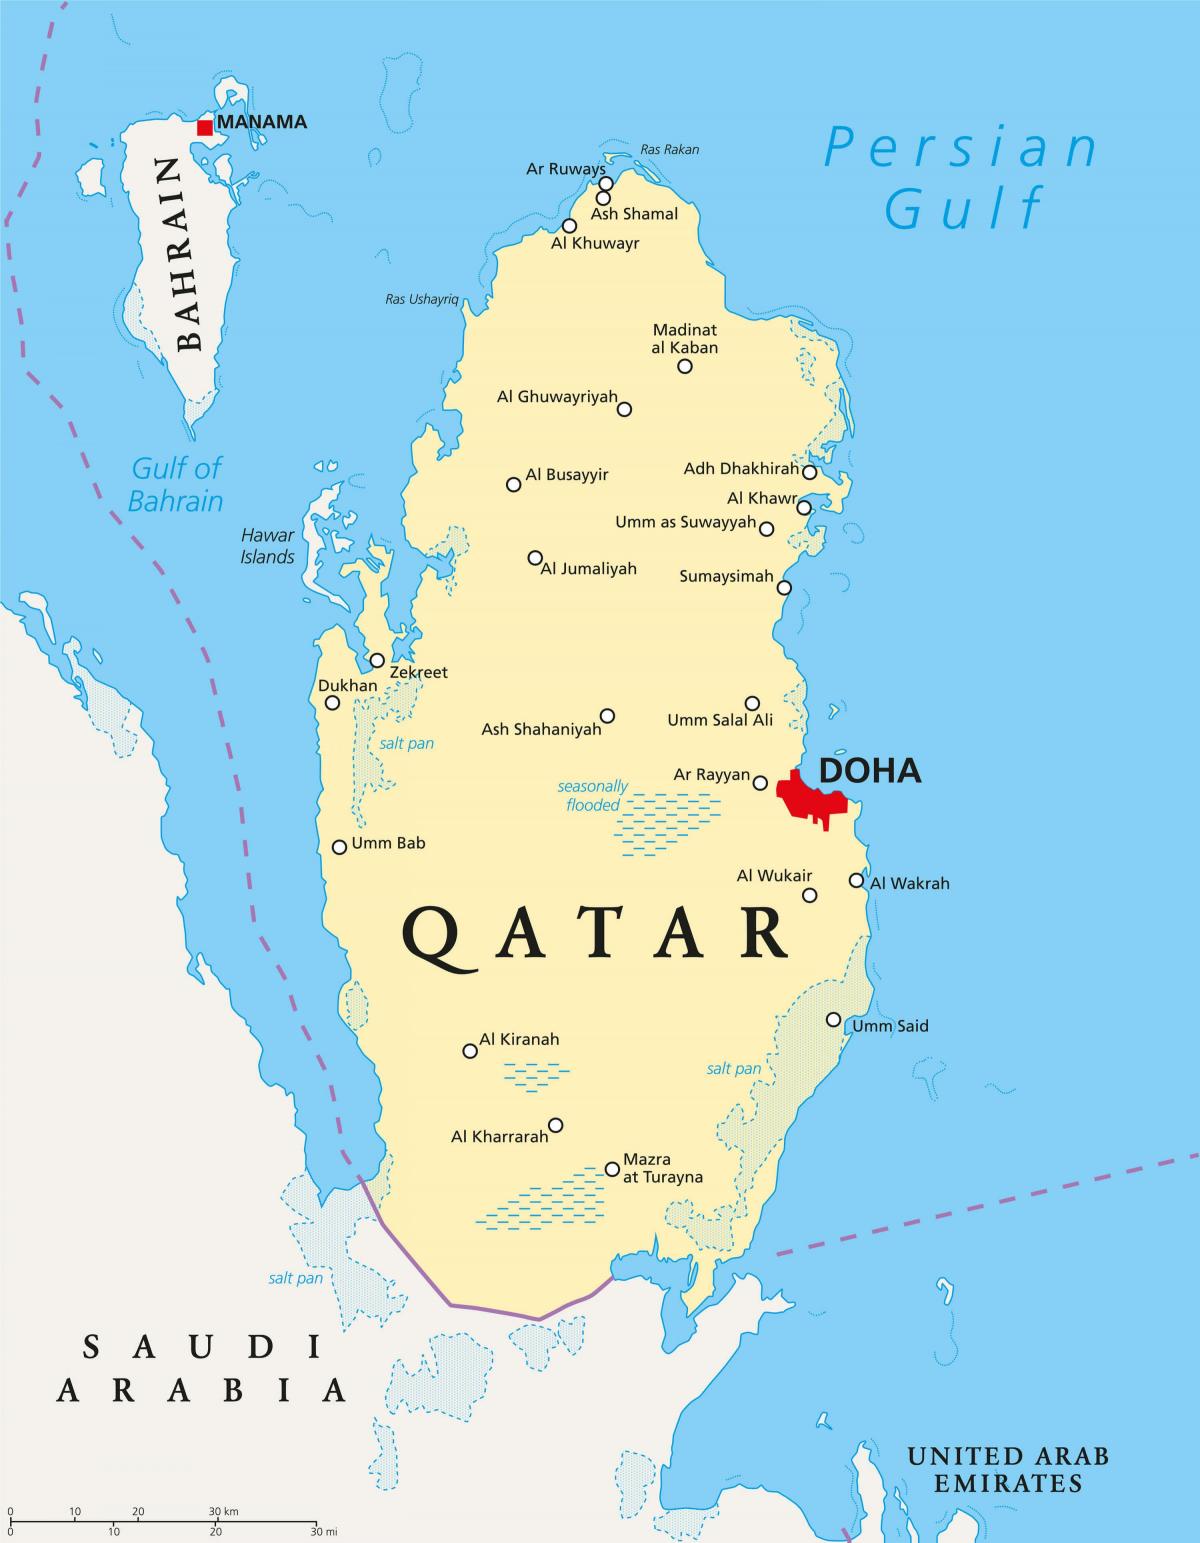 Katar mapie z miastami